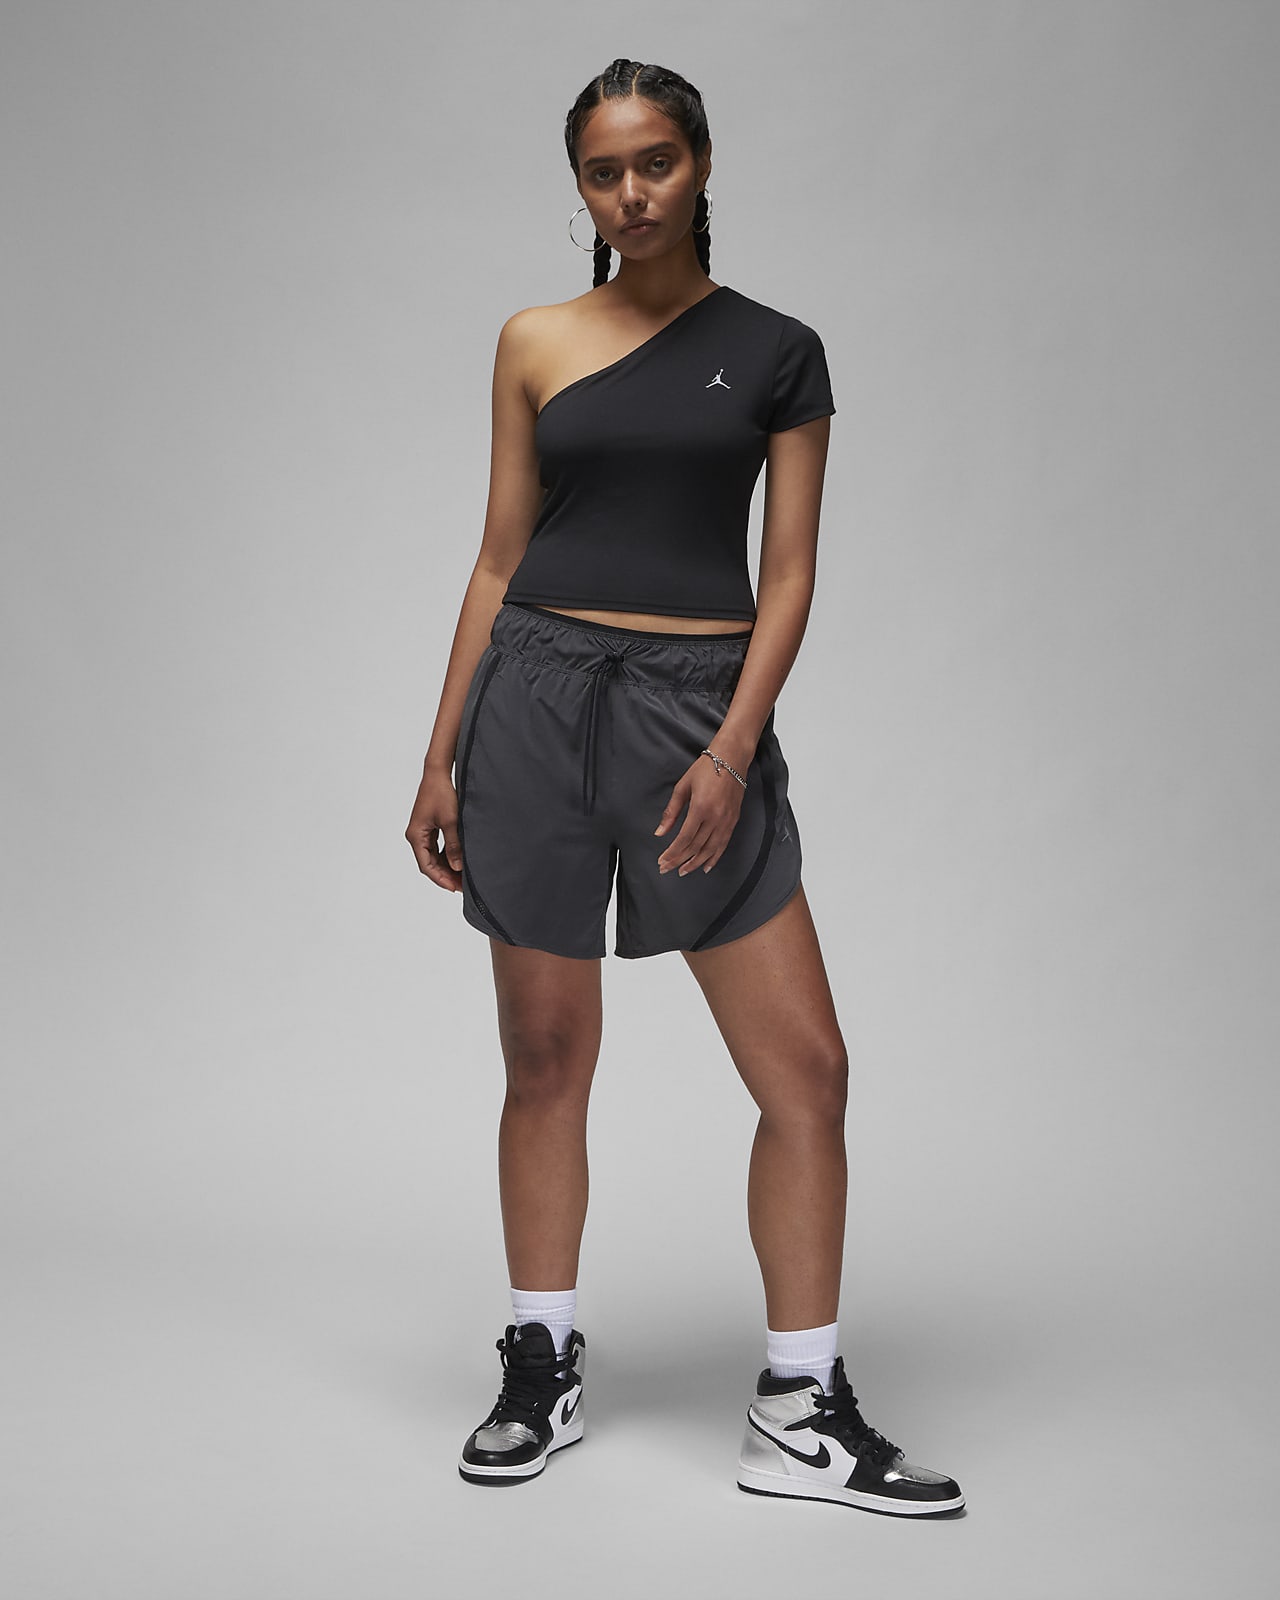 Women's Sportswear Tops. Nike CA